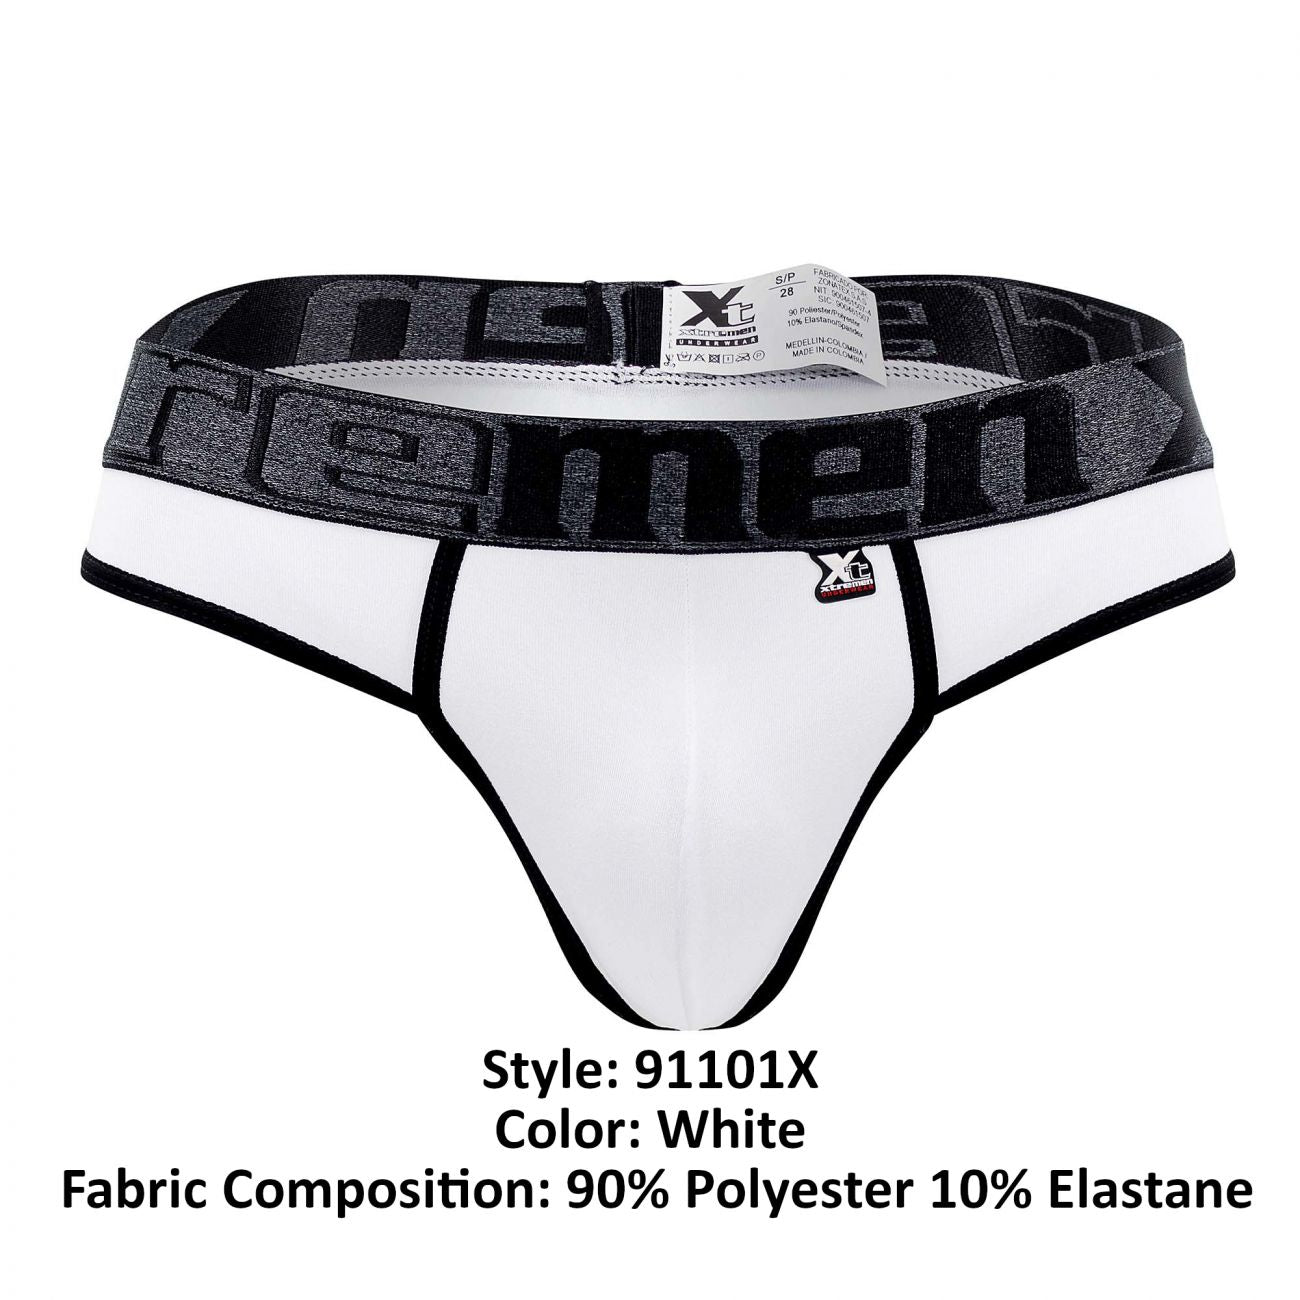 Xtremen 91101X Microfiber Thongs White Plus Sizes